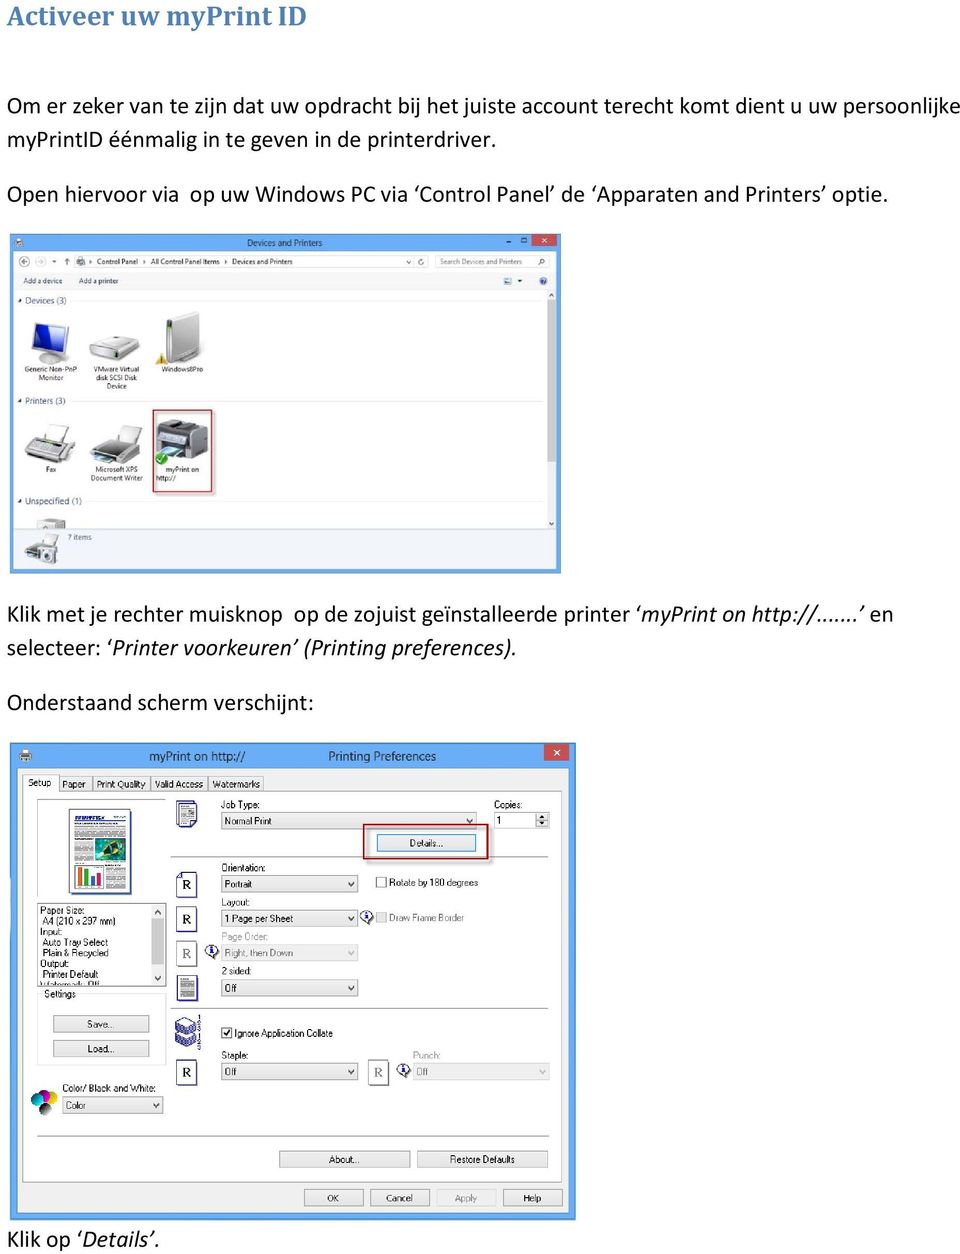 Open hiervoor via op uw Windows PC via Control Panel de Apparaten and Printers optie.